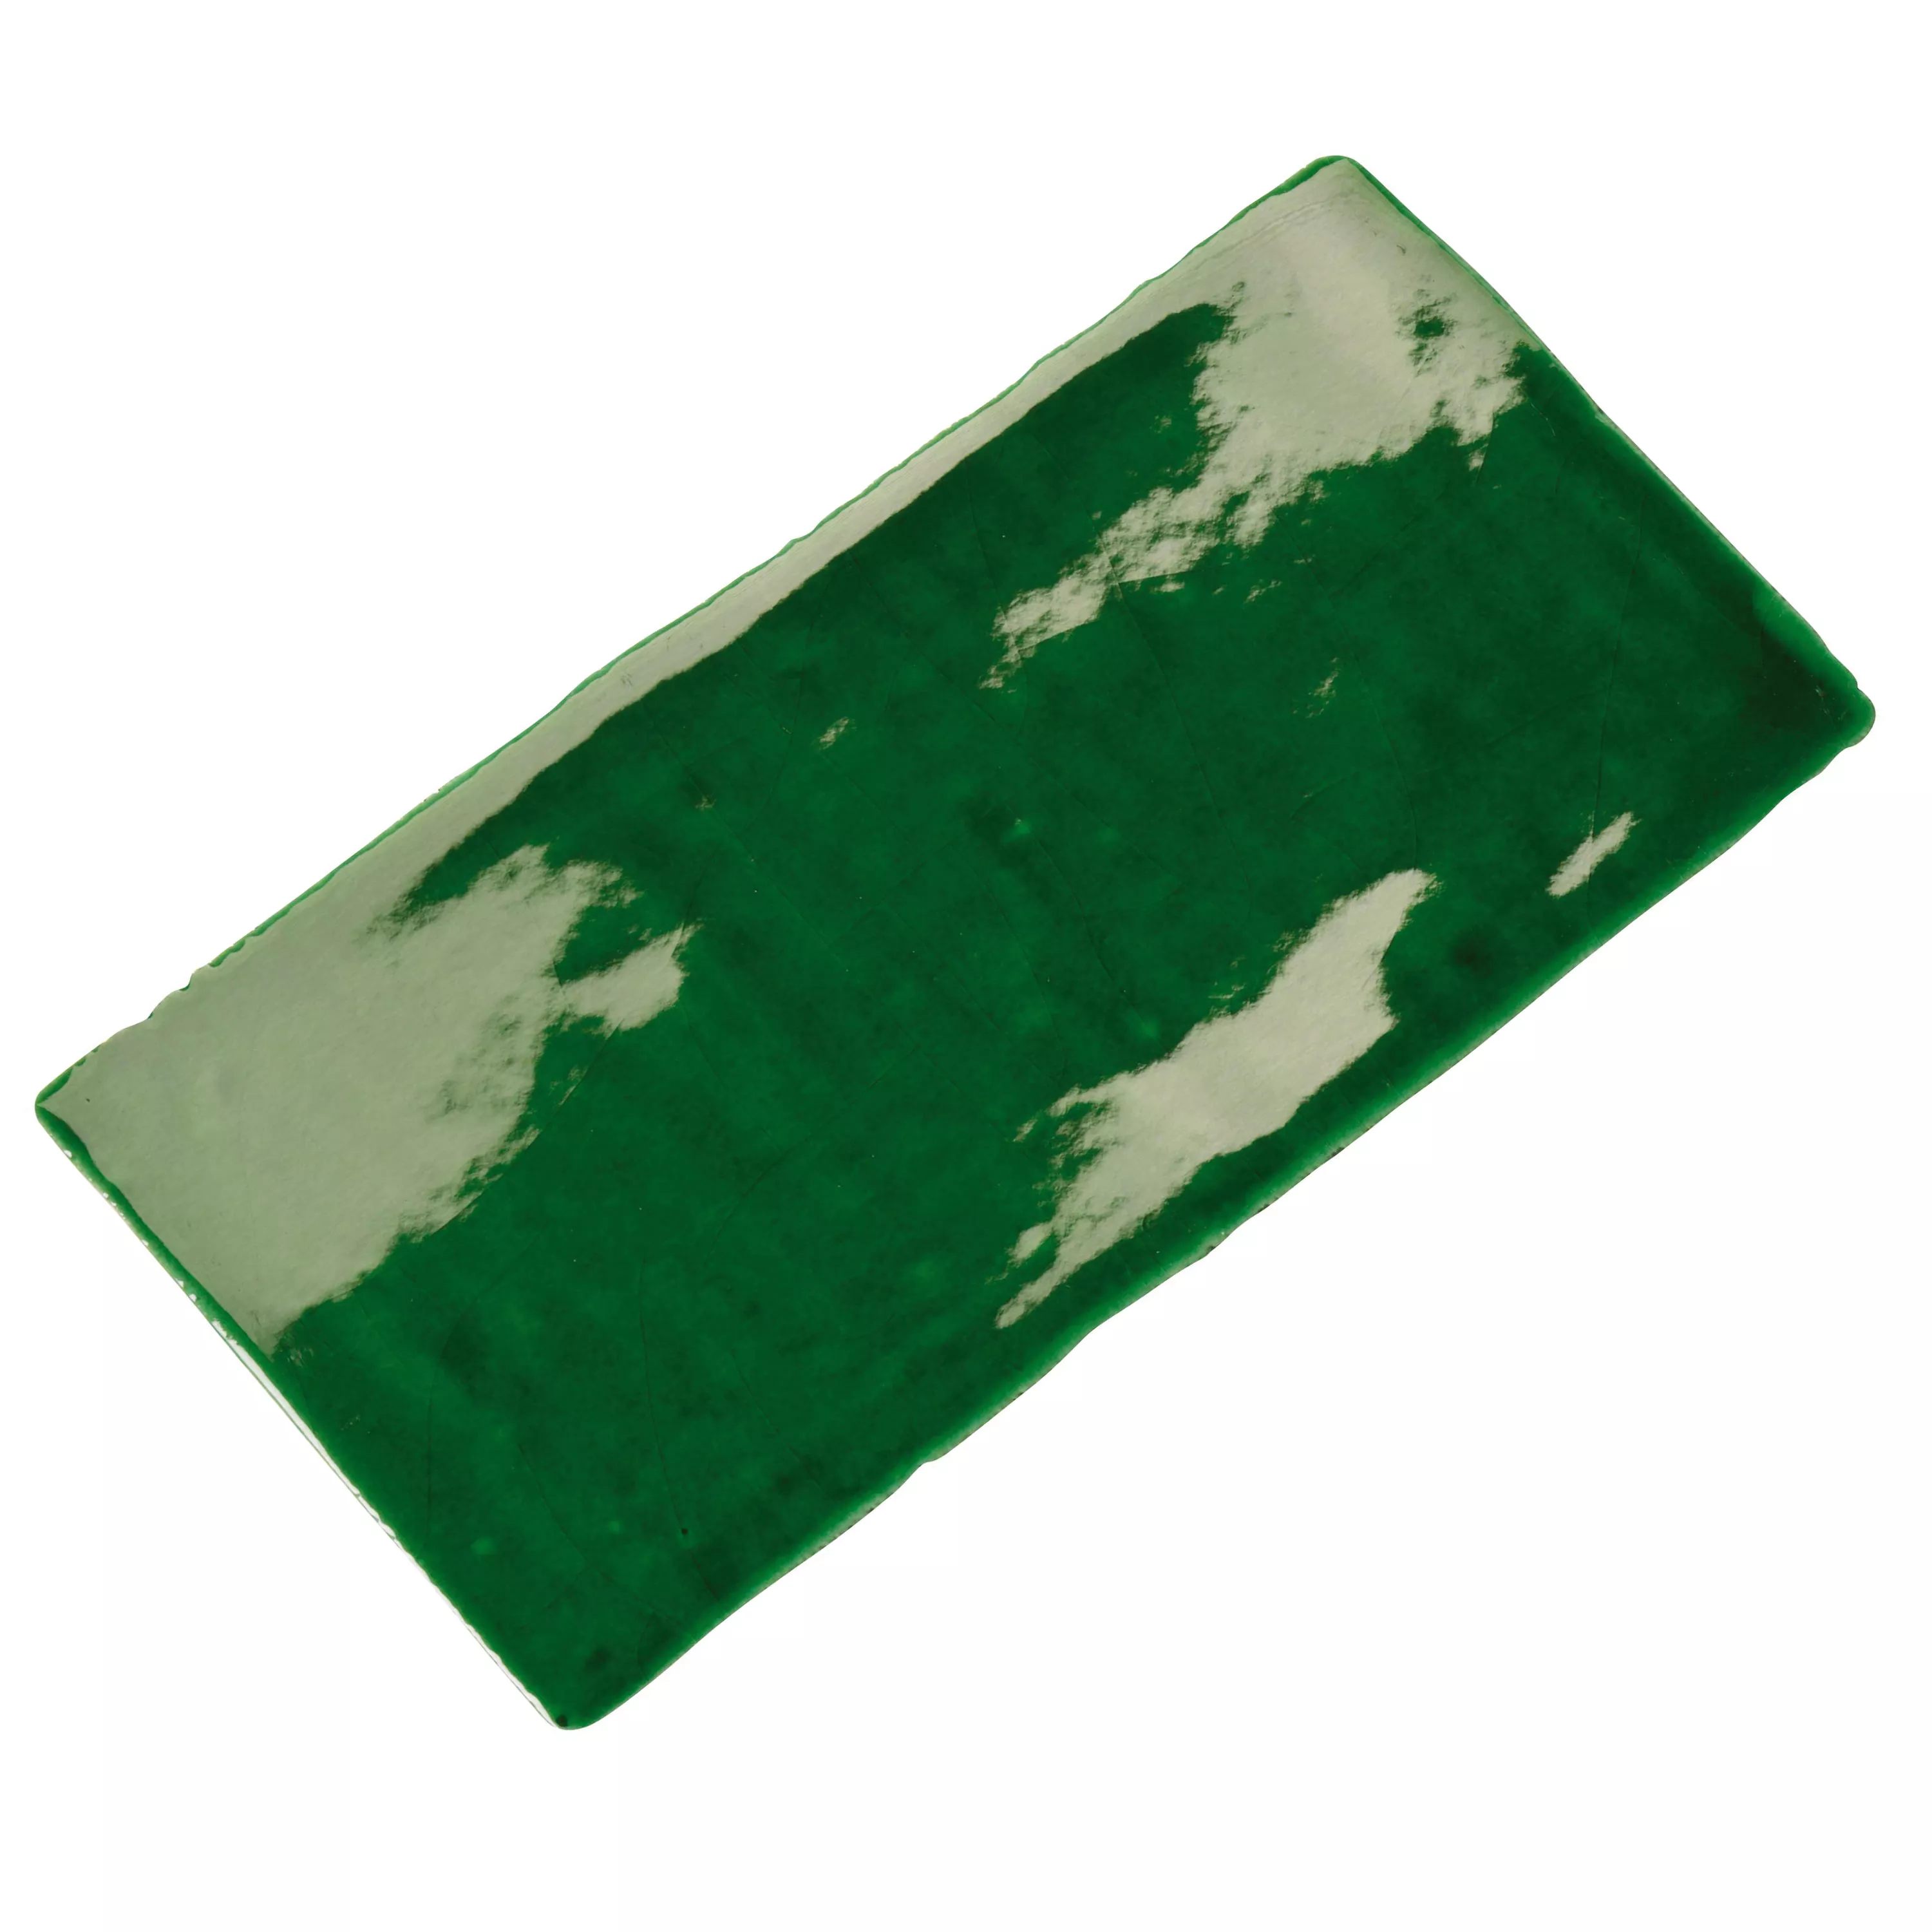 Model Faianta De Perete Algier Lucrate Manual 7,5x15cm Verde Smarald